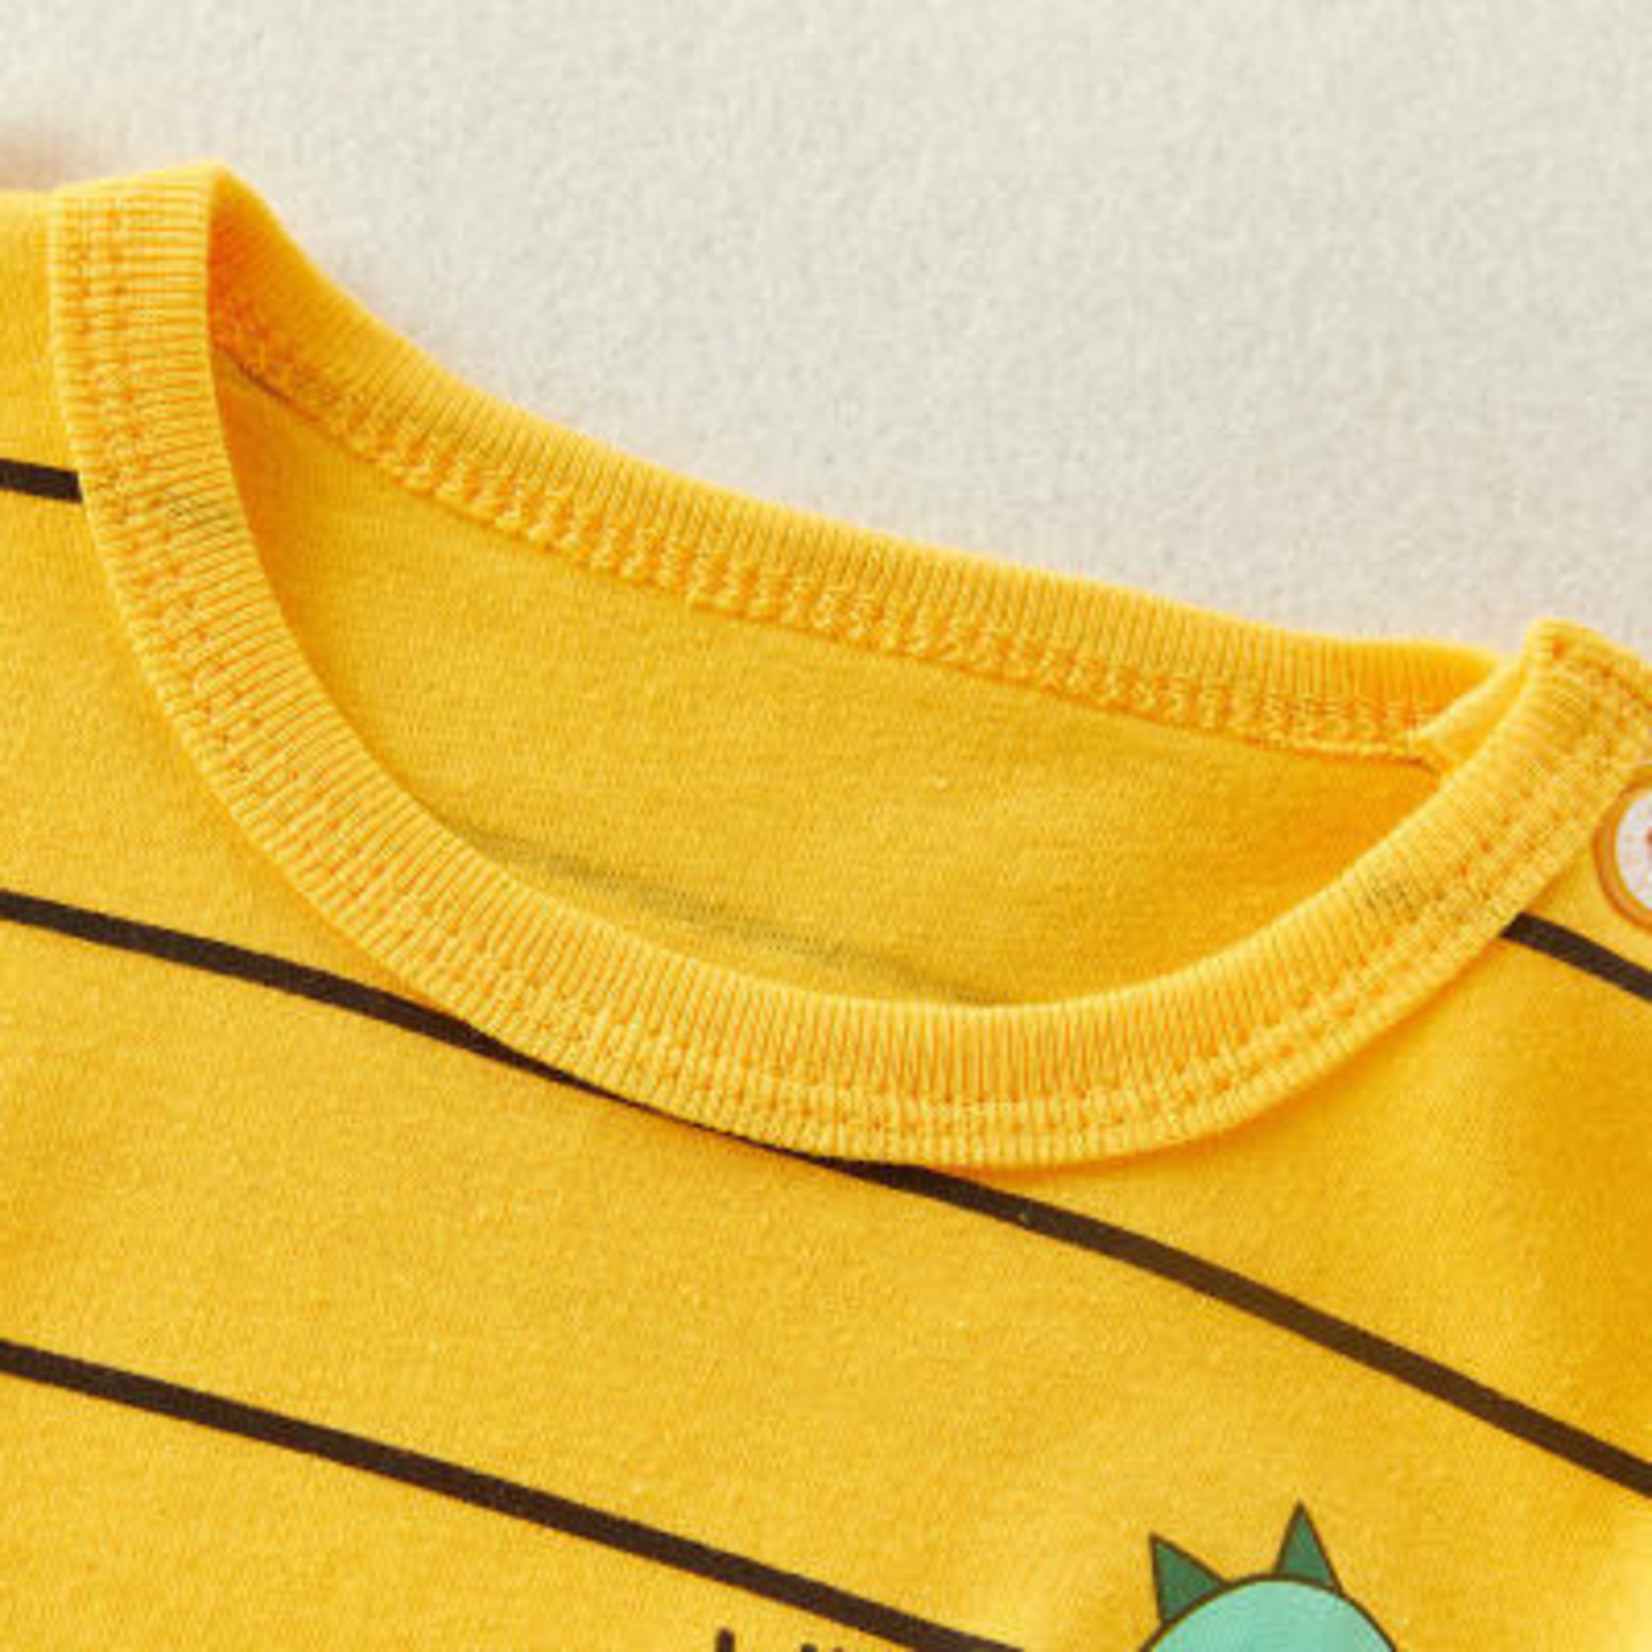 Riolio Yellow with Stripes Pajamas-2 piece set